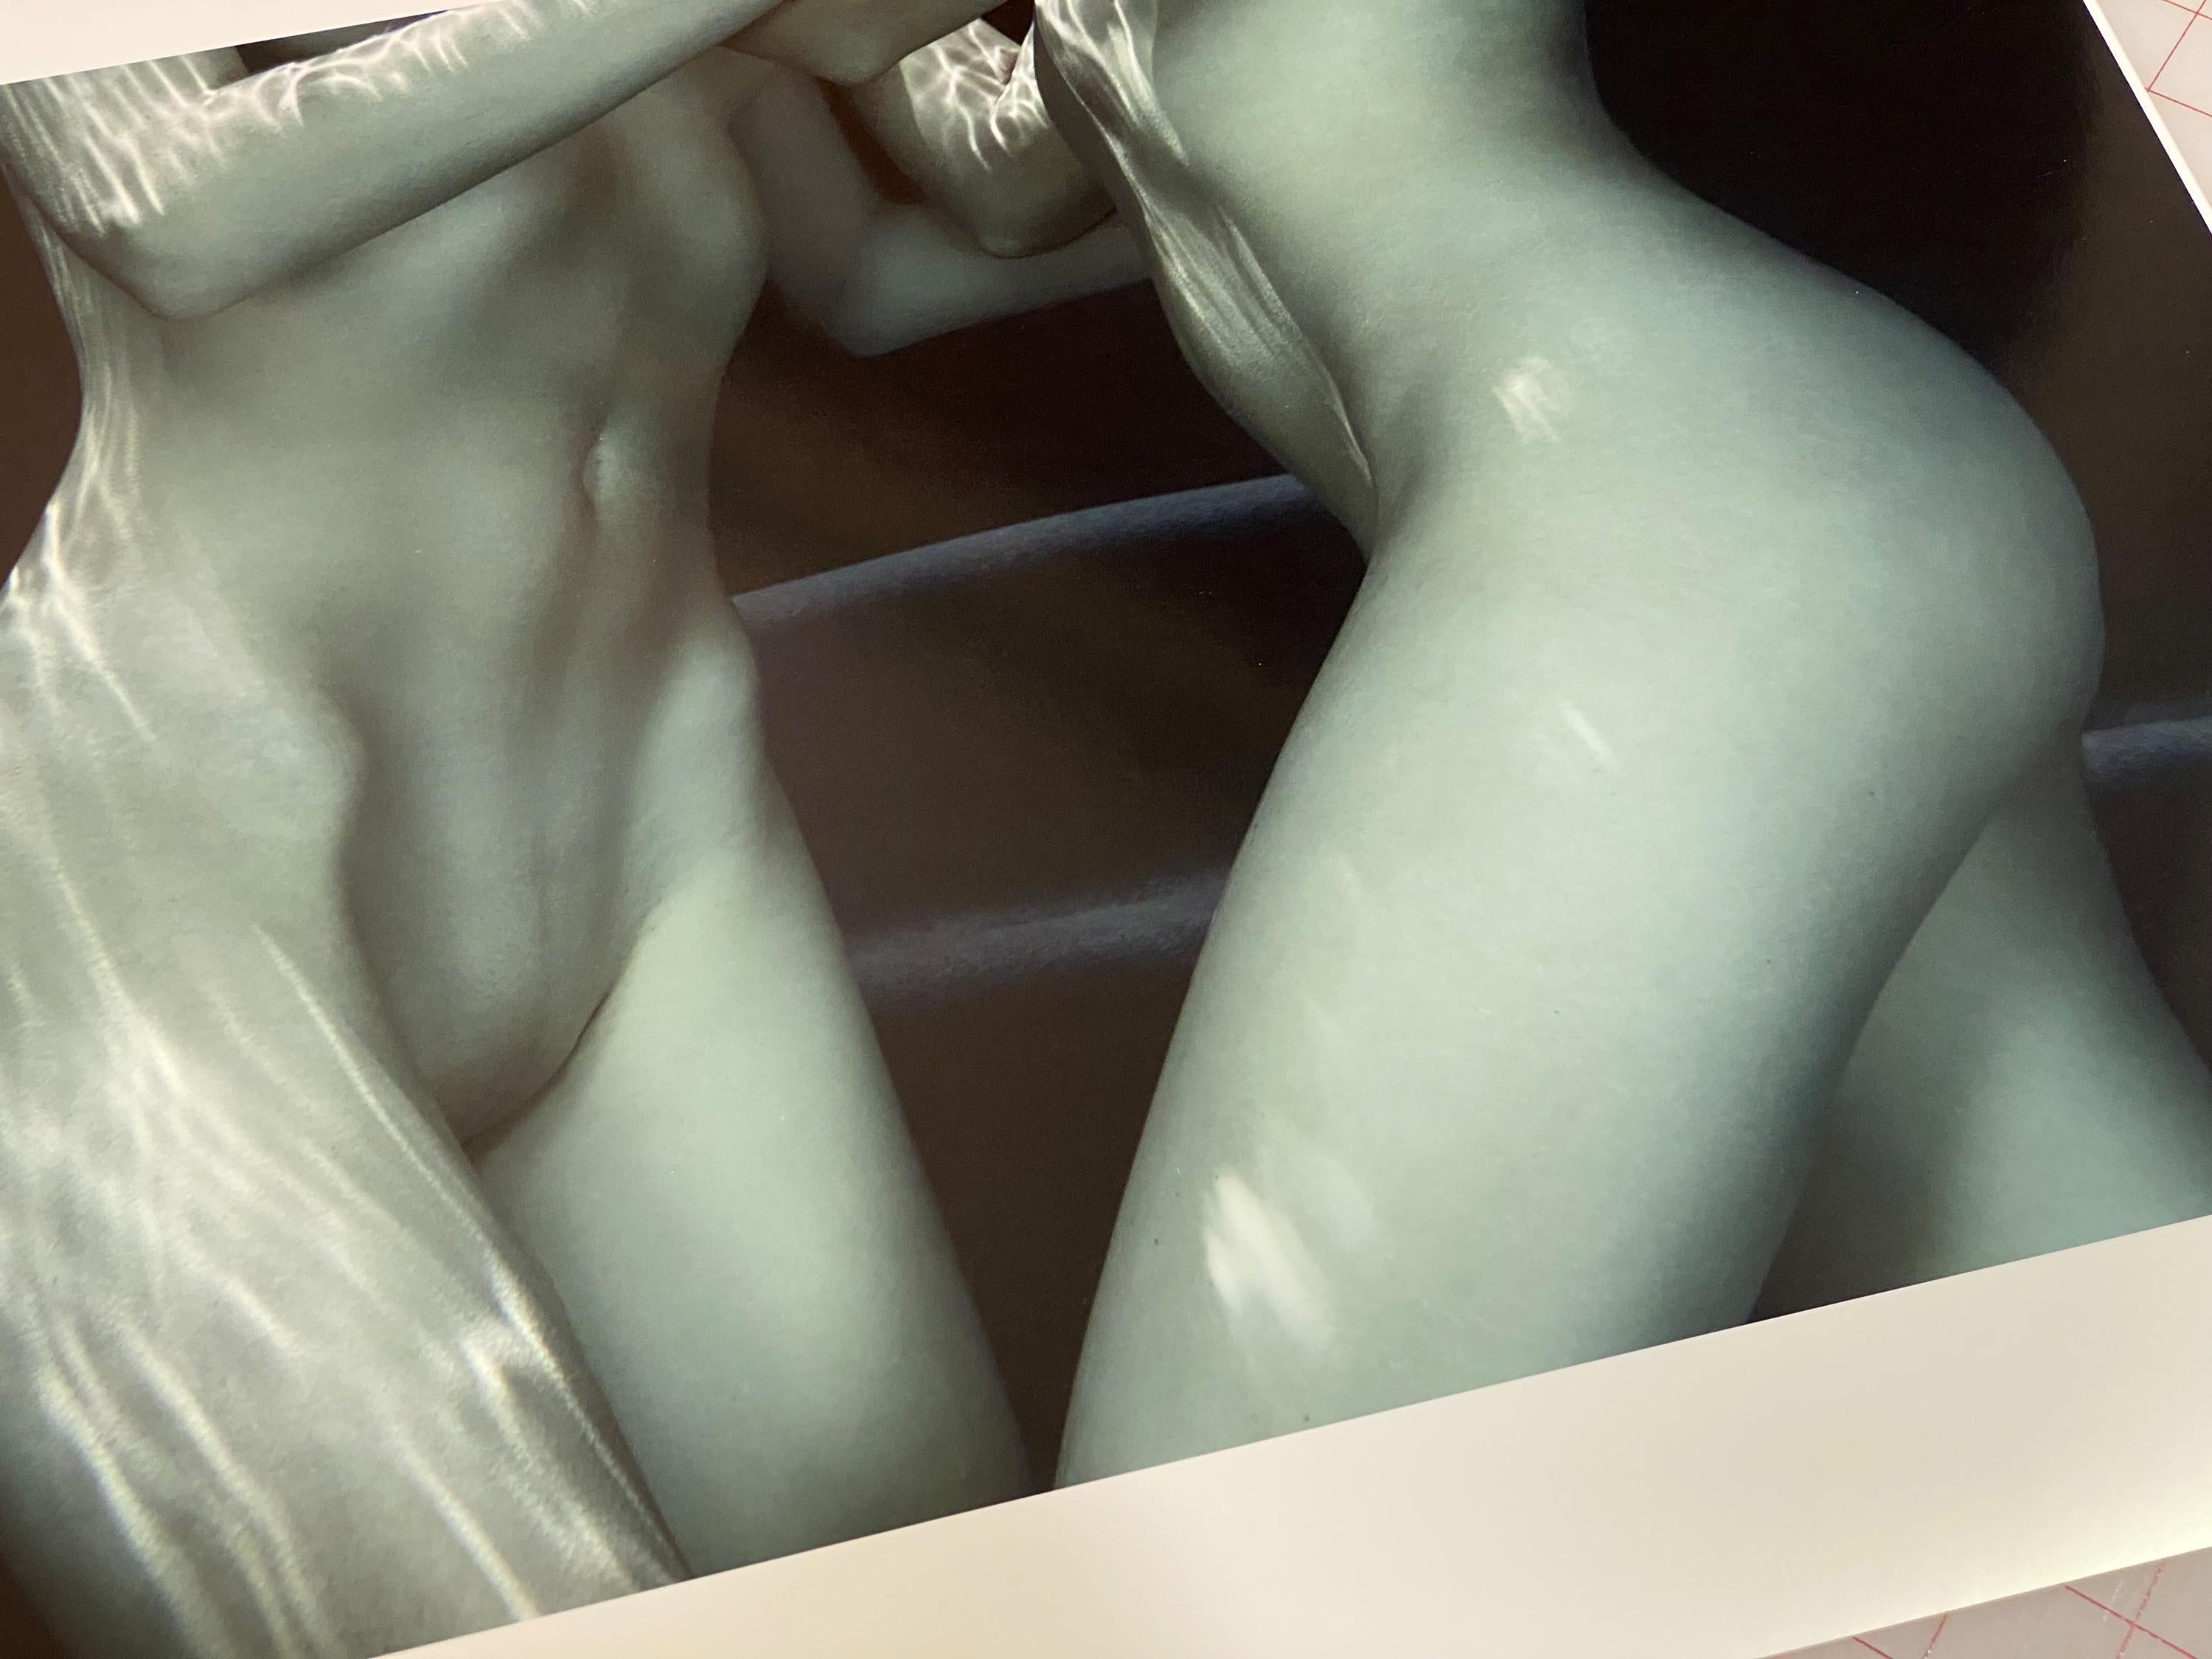 Photographie sous-marine de deux jeunes femmes nues dans une piscine. La photographie minimaliste représente partiellement des corps dans un schéma de couleurs bleues.

Impression originale de qualité galerie signée par l'artiste. 
Impression